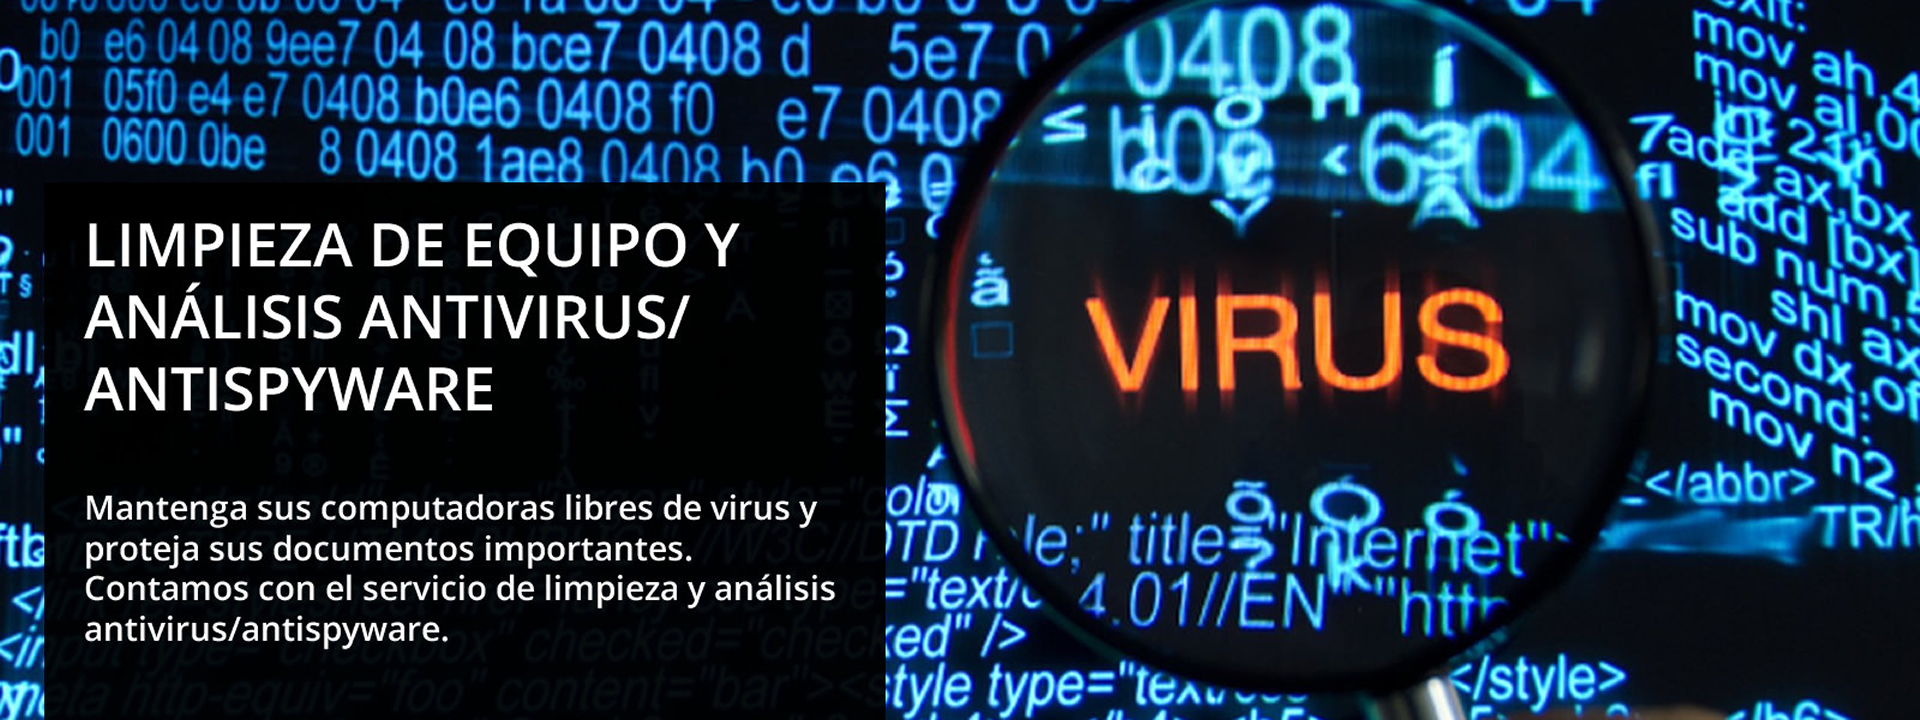 Limpieza de equipos y análisis antivirus / antispyware para computadoras